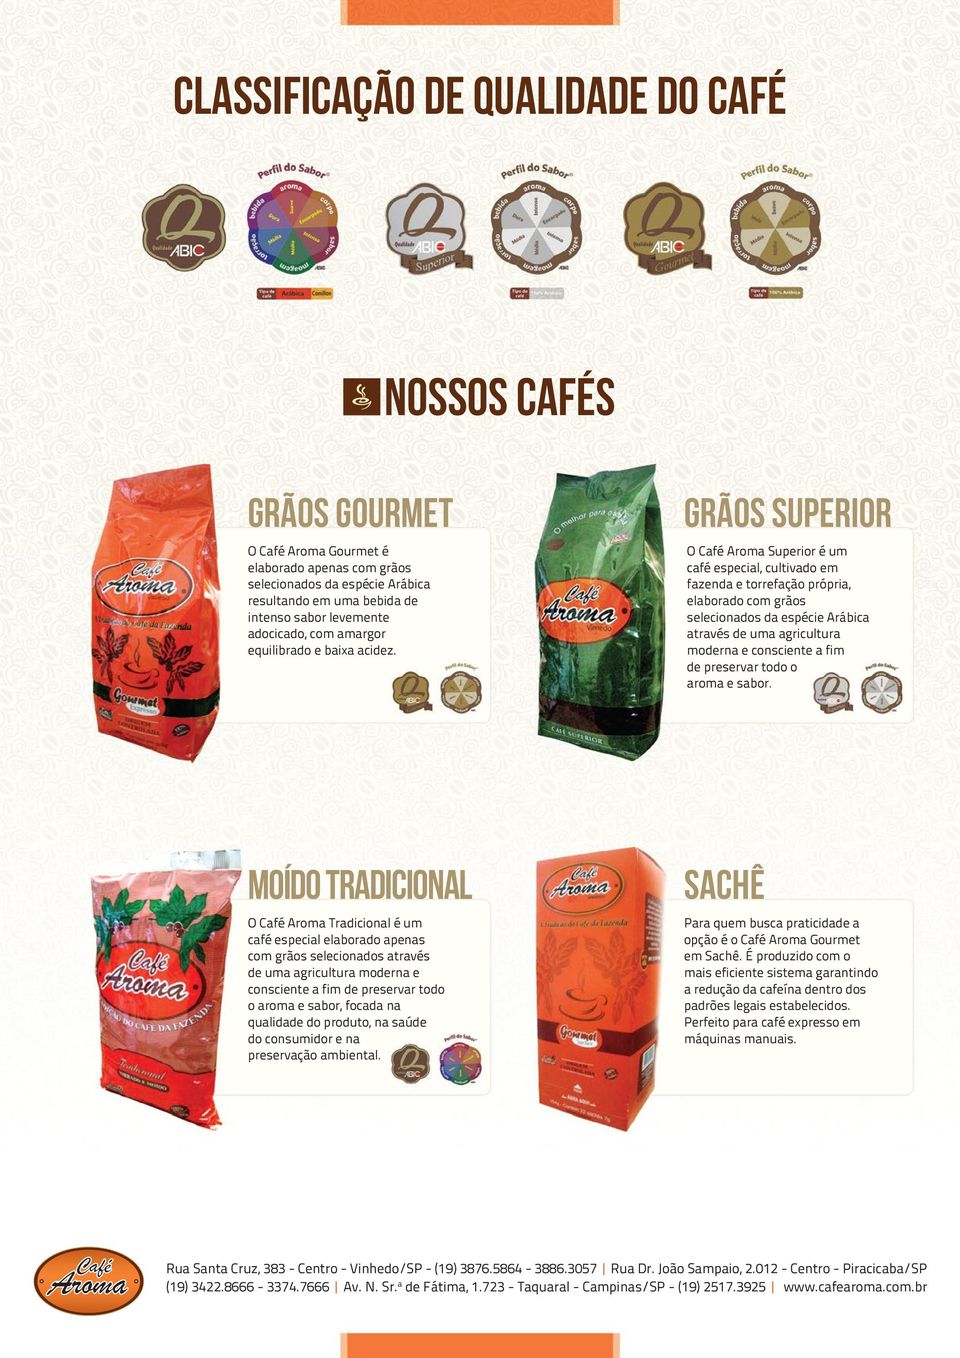 GRÃOS SUPERIOR O Café Aroma Superior é um café especial, cultivado em fazenda e torrefação própria, elaborado com grãos selecionados da espécie Arábica através de uma agricultura moderna e consciente